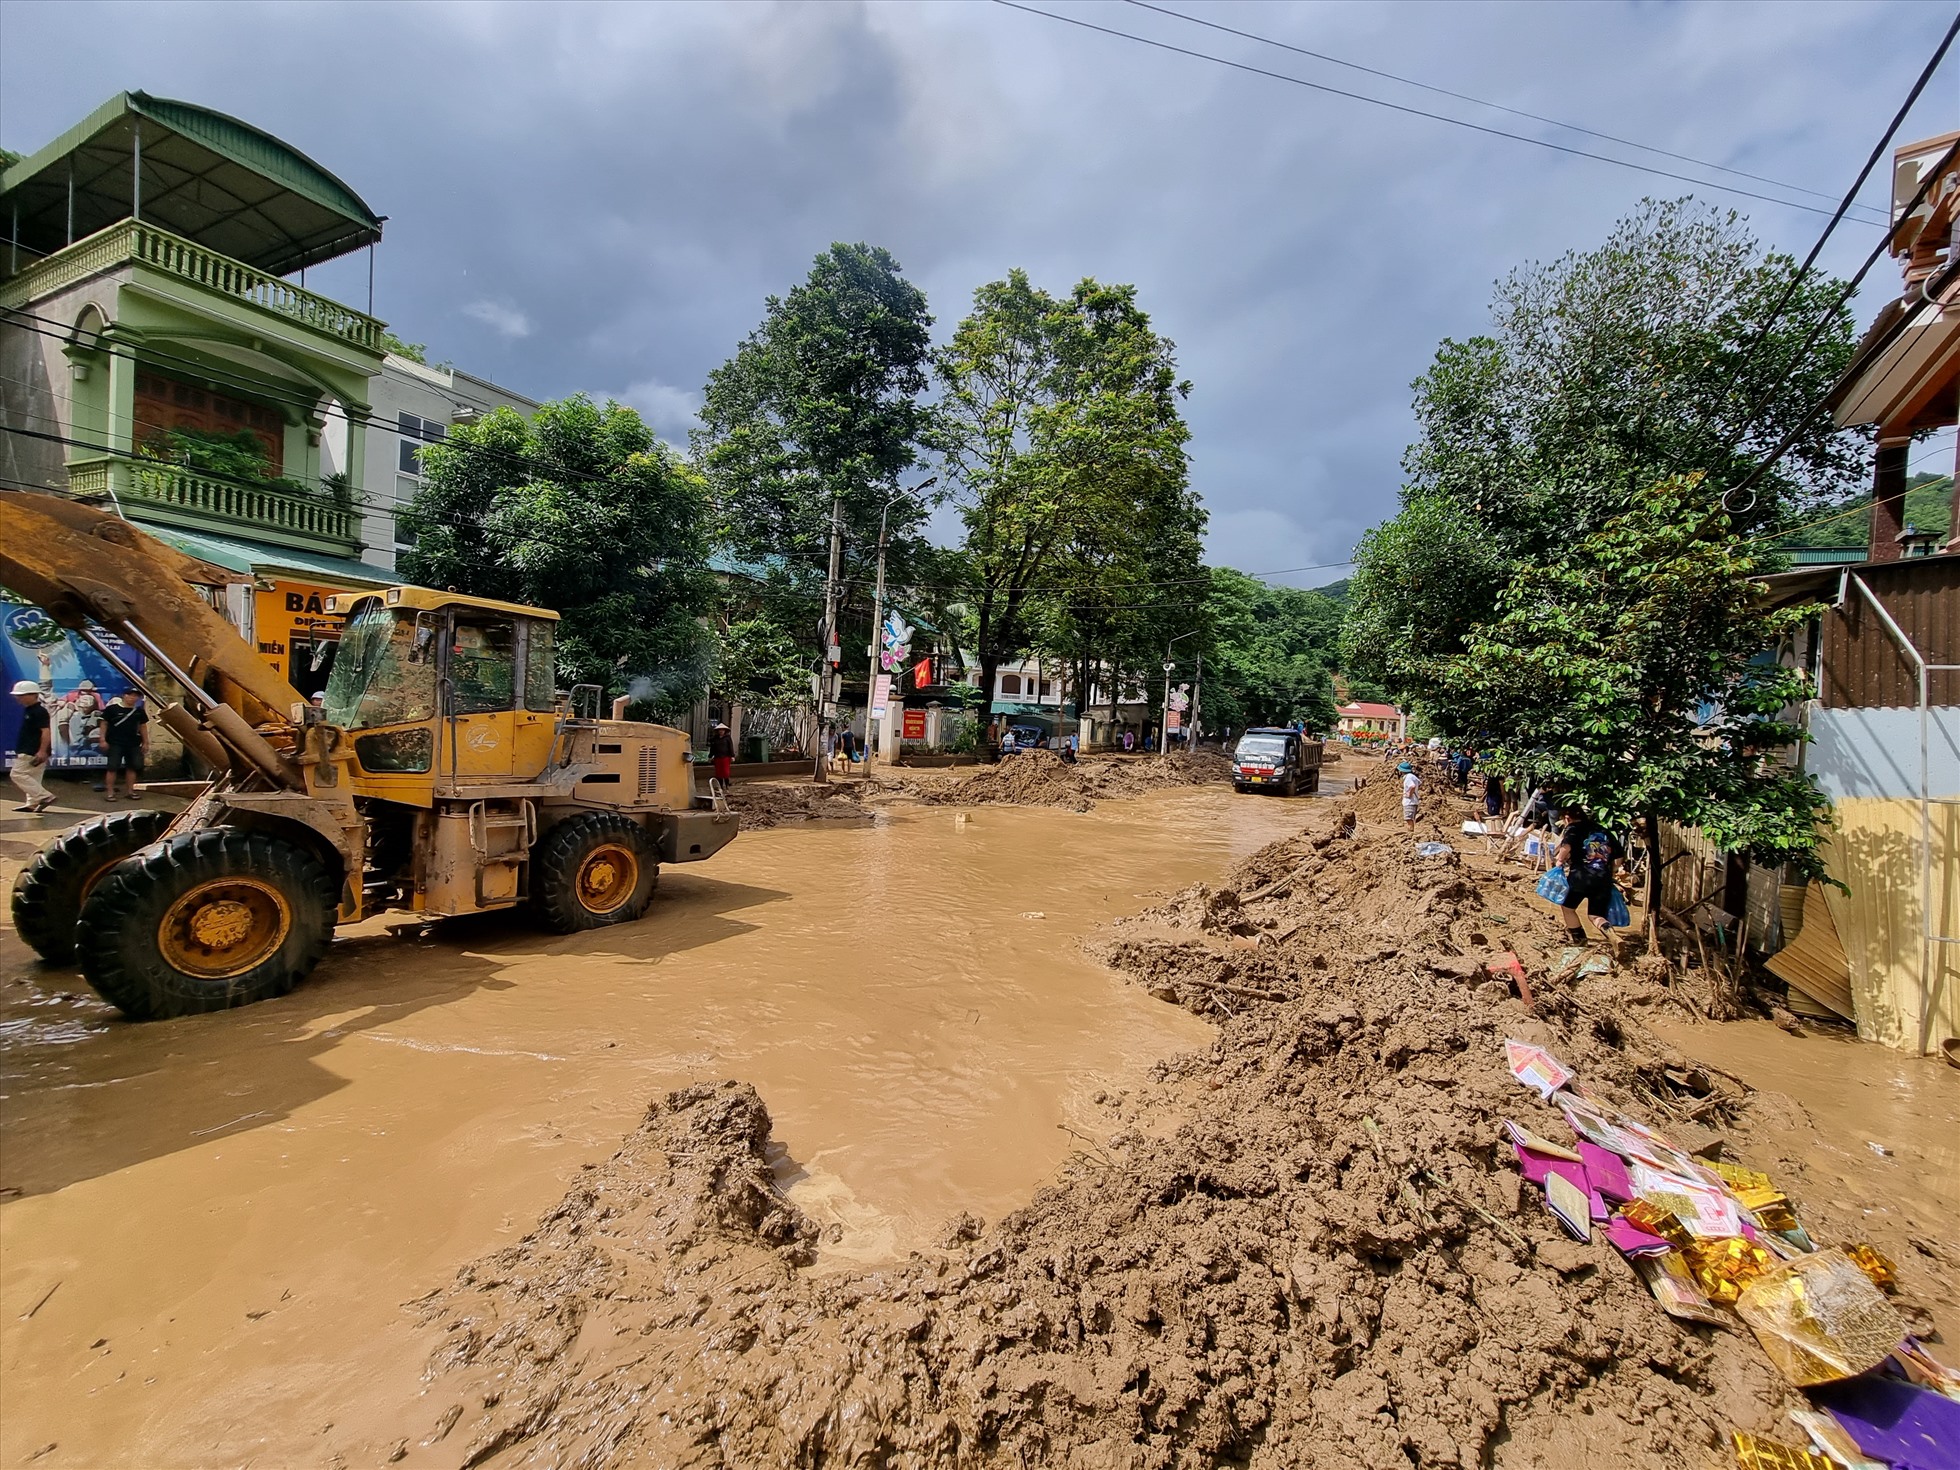 Quốc lộ 7 đi qua thị trấn Mường Xén, huyện Kỳ Sơn đã biến thành dòng sông bùn, rác, địa phương huy động các phương tiện cơ giới làm thông tầm để giải phóng mặt đường.